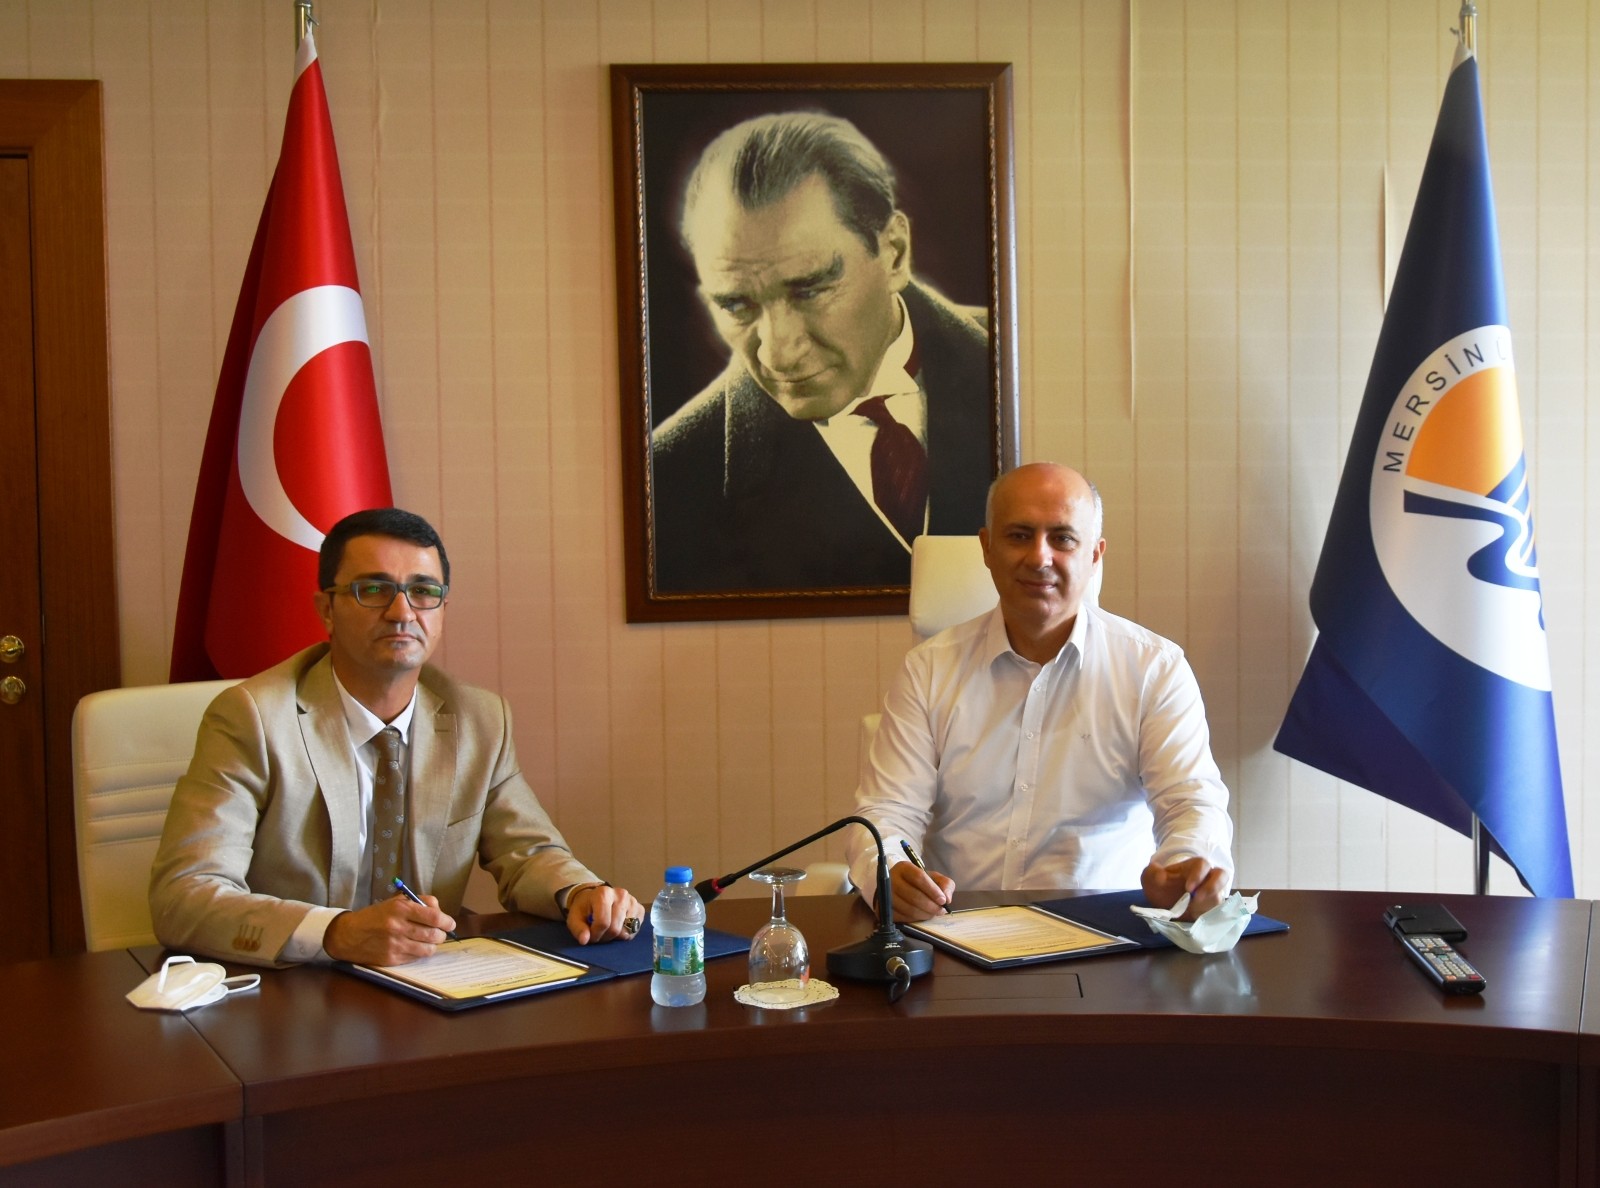 MEÜ ile Gençlik ve Spor İl Müdürlüğü arasında işbirliği protokolü imzalandı